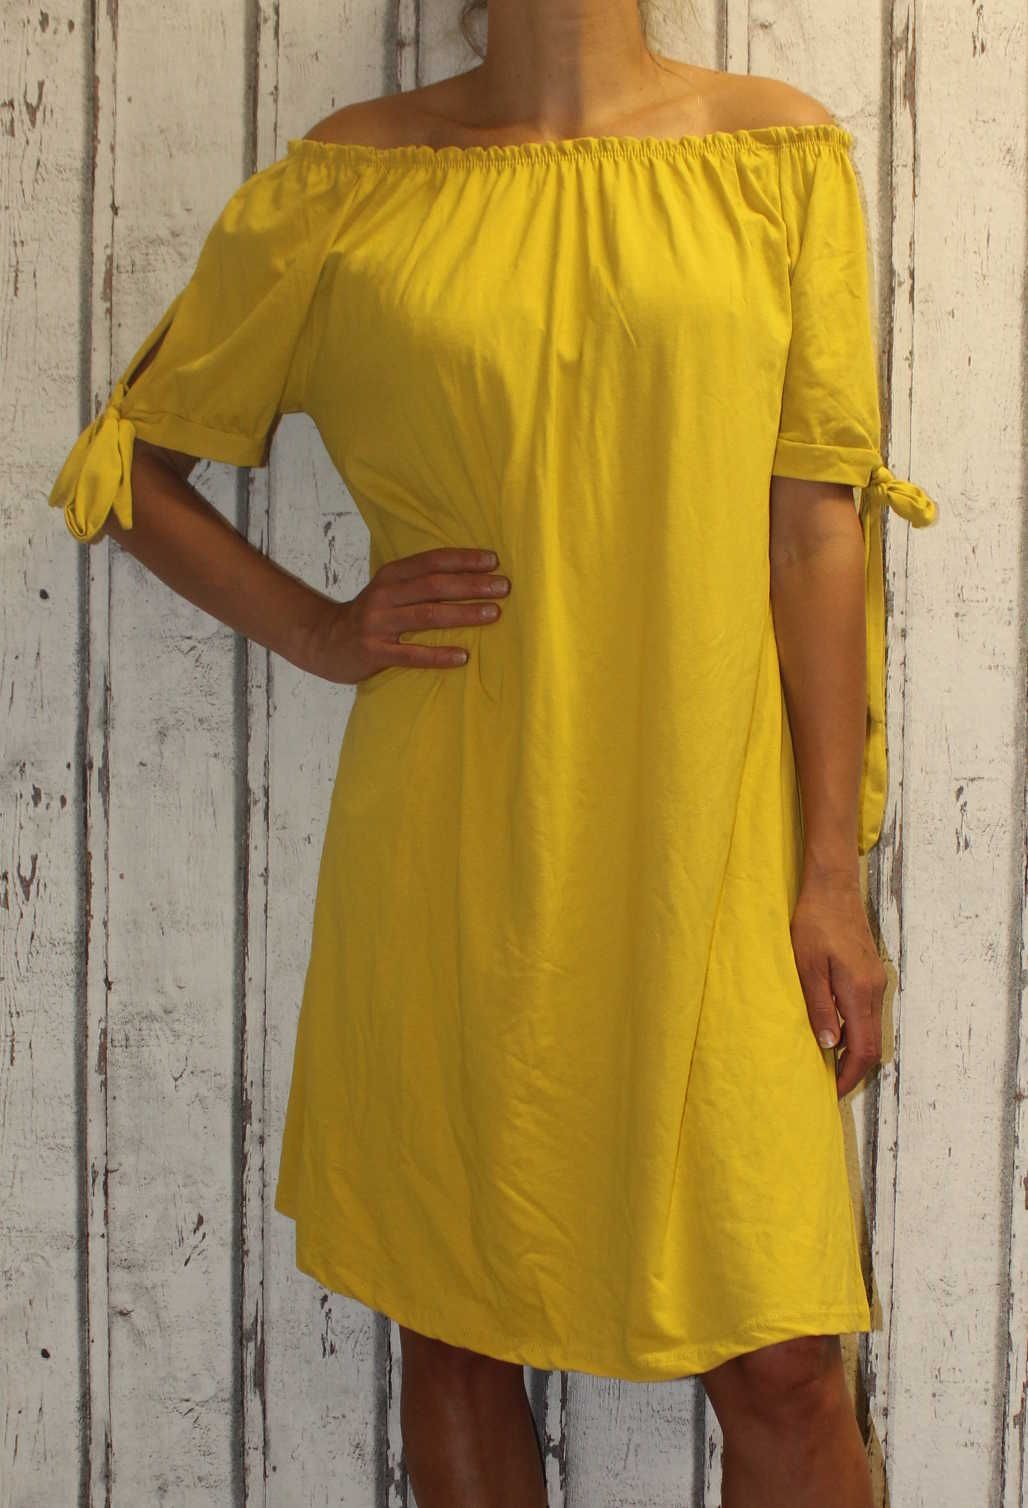 Dámské letní šaty, plážové šaty, dámské bavlněné šaty, pohodlné šaty dámské šaty volný střih, dámské šaty přes ramena, žluté letní šaty Italy Moda